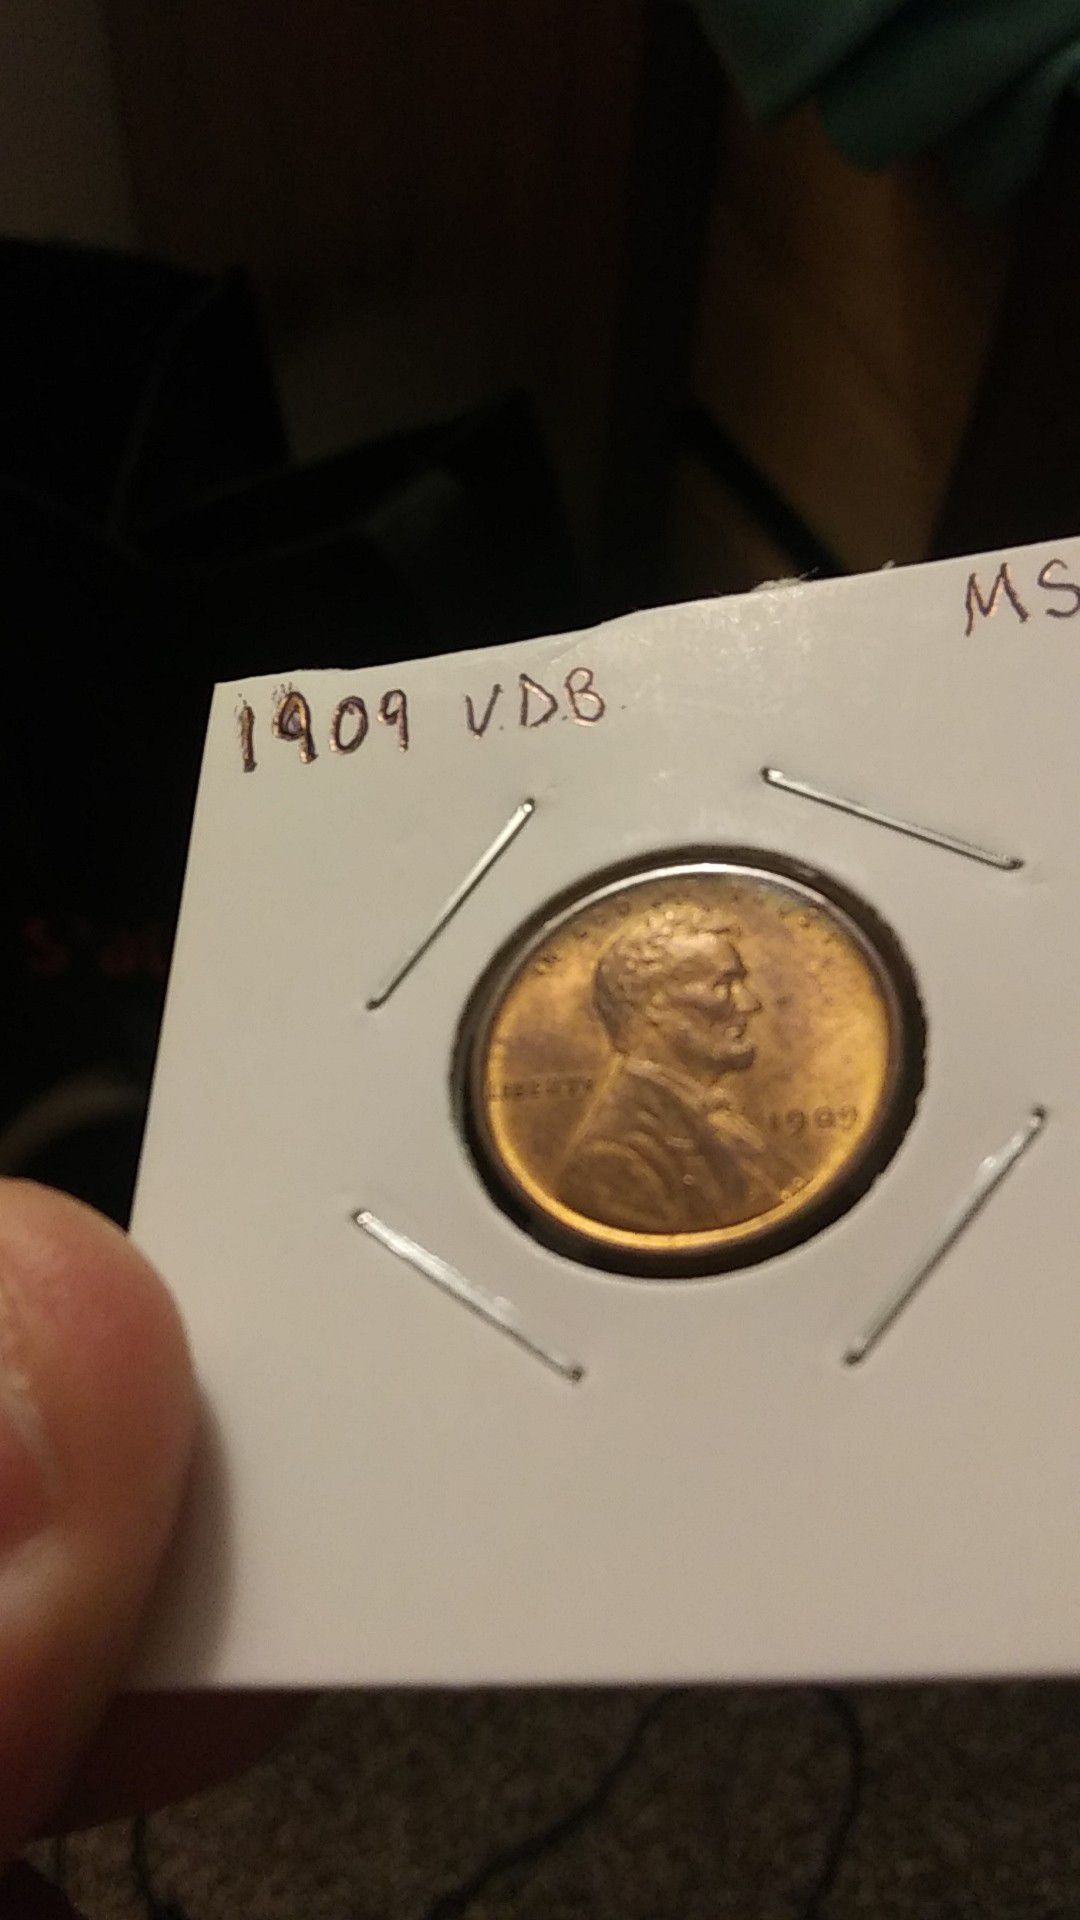 1909 V.D.B. Lincoln cent